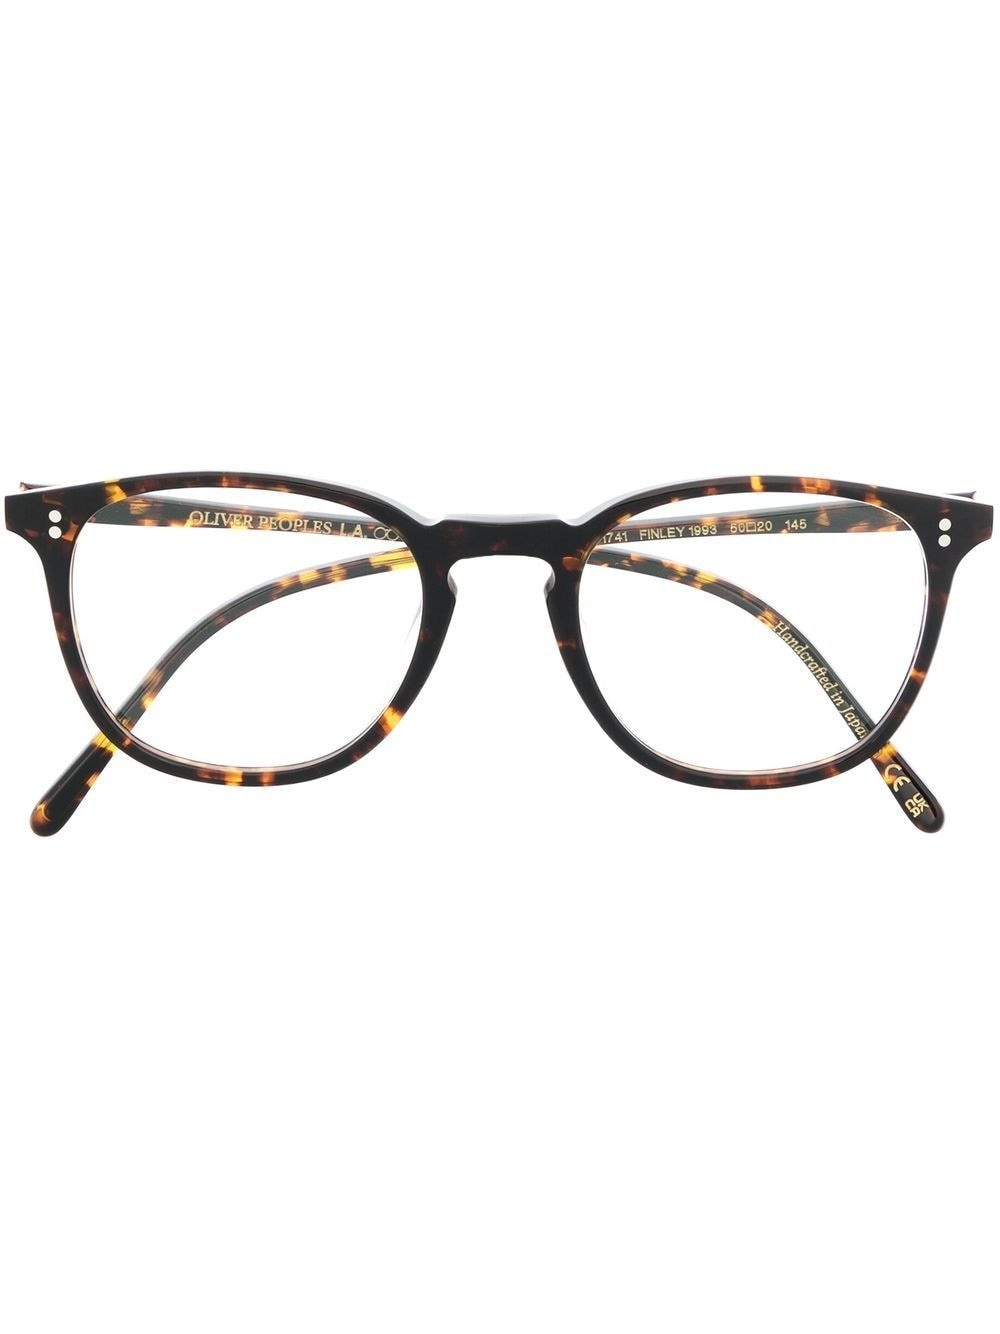 tortoiseshell-frame glasses - 1